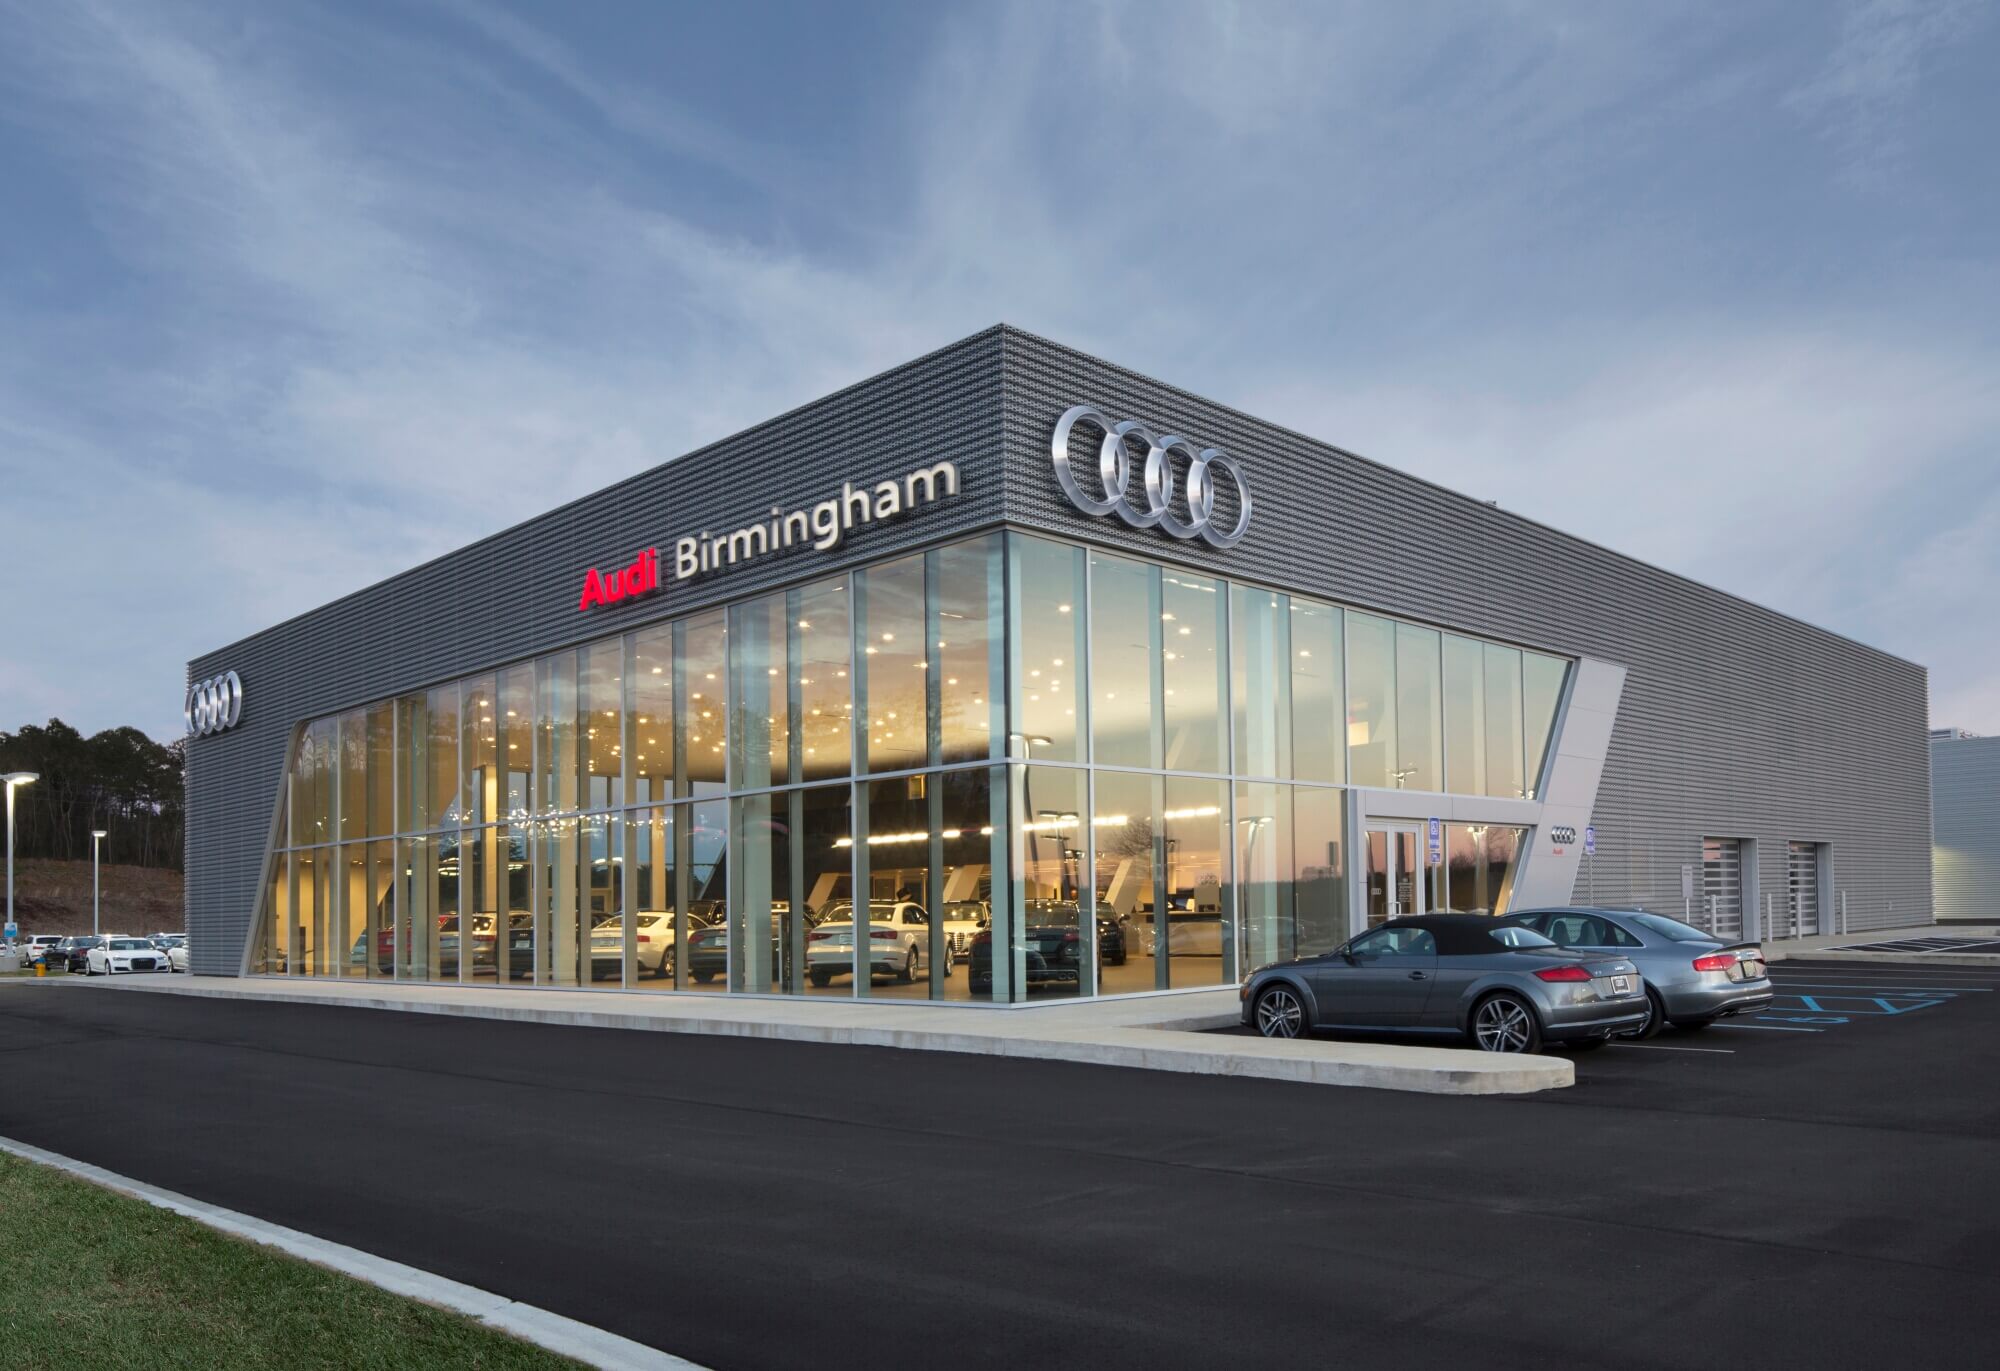 Audi Birmingham